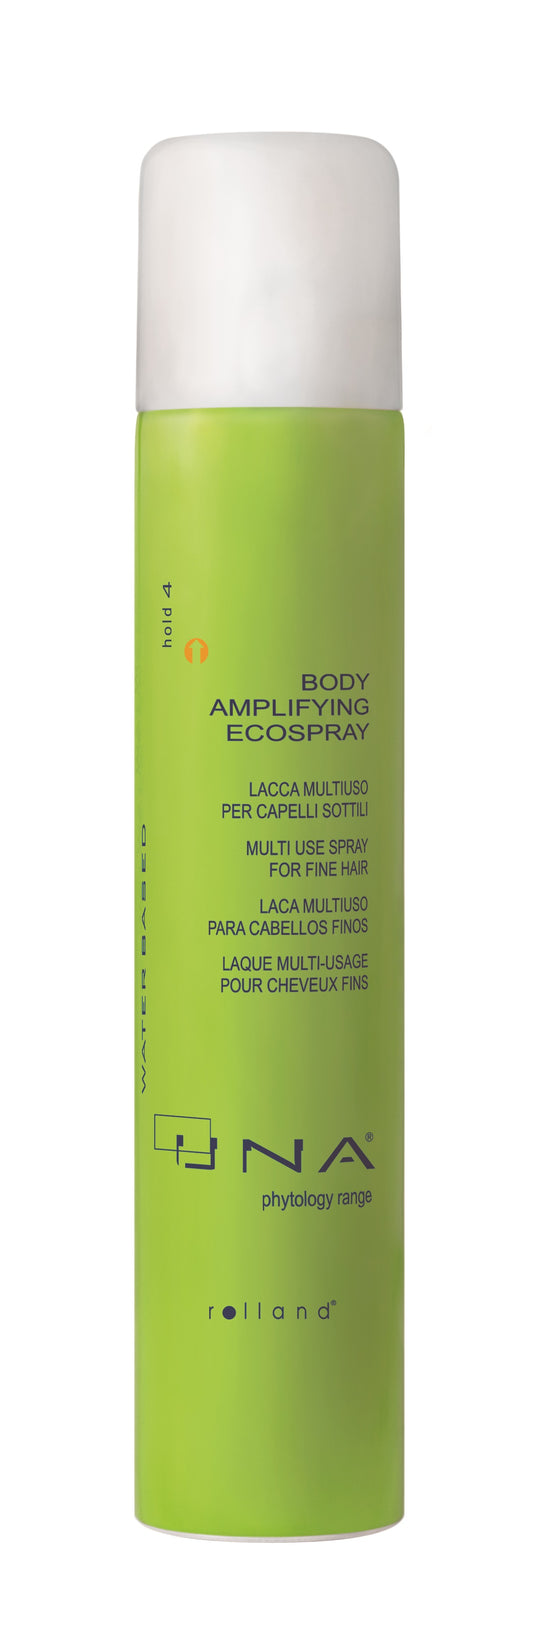 UNA Body Amplifying Eco-Spray